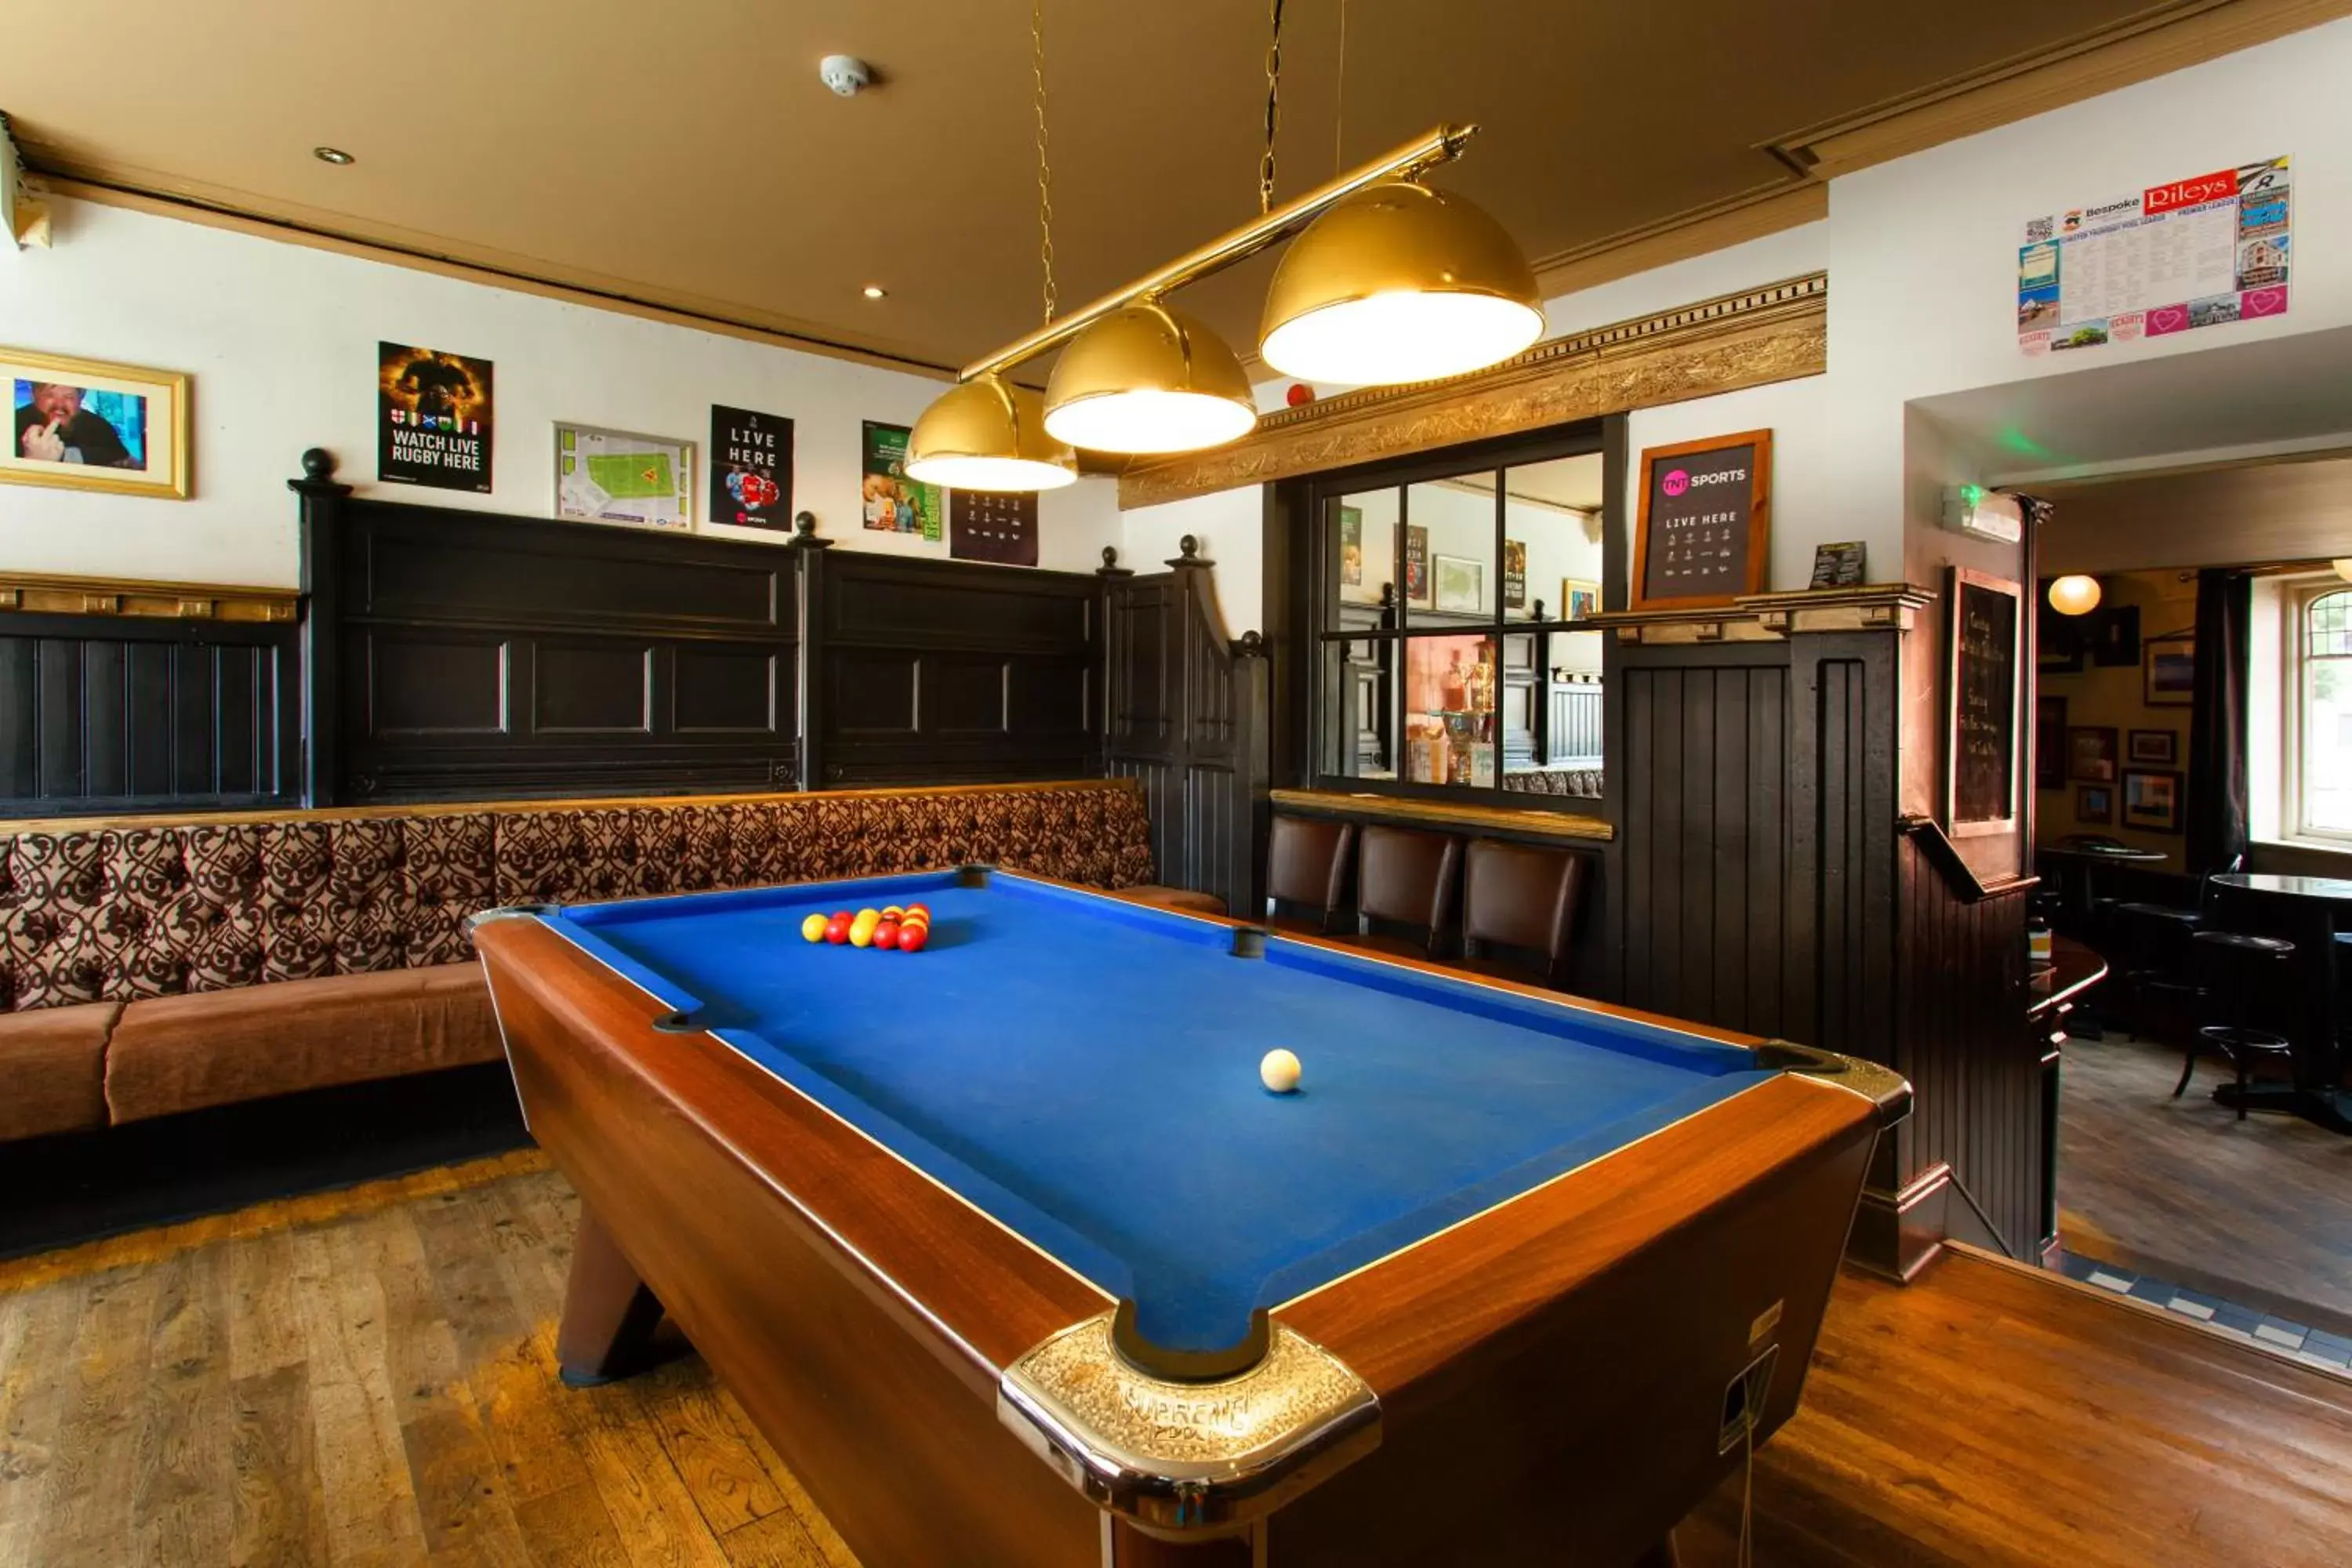 Game Room, Billiards in The Saddle Inn